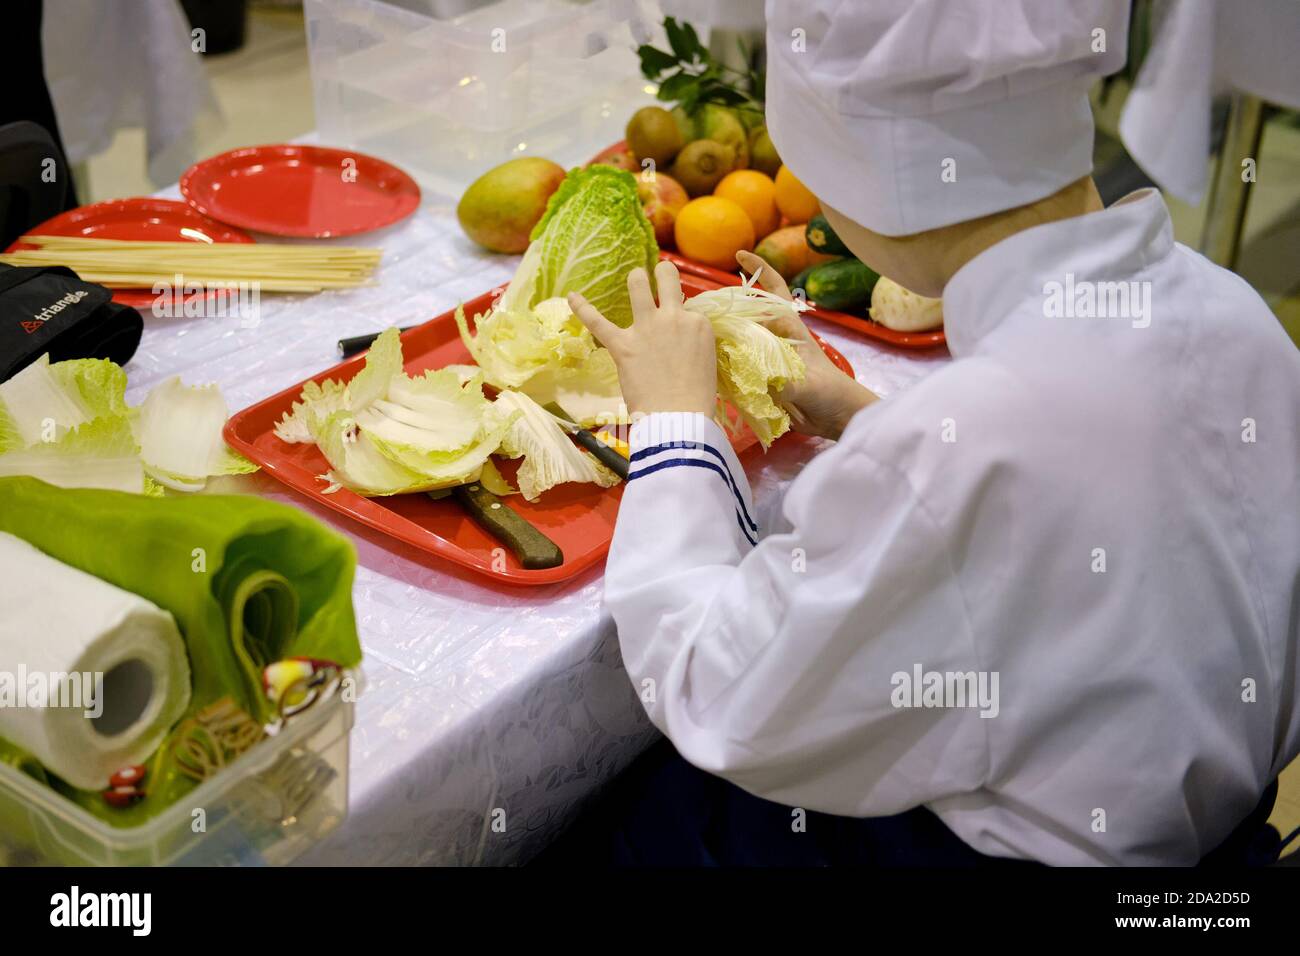 Un uomo carves modelli su cibo per decorare una tabella con verdure e frutta in forma di fiori Foto Stock